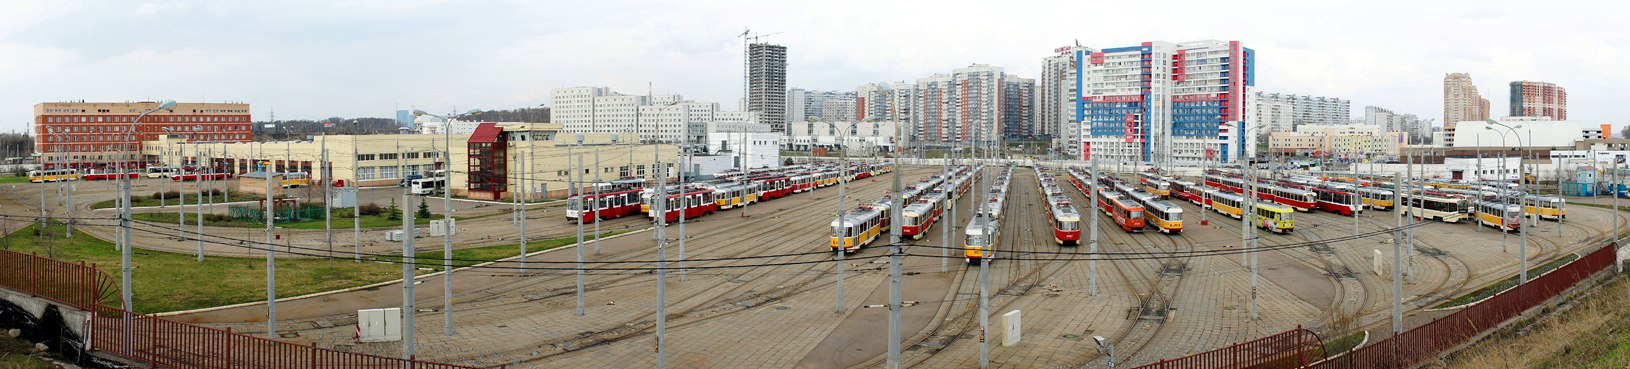 Moskva — Tram depots: [3] Krasnopresnenskoye. New site in Strogino; Moskva — Views from a height